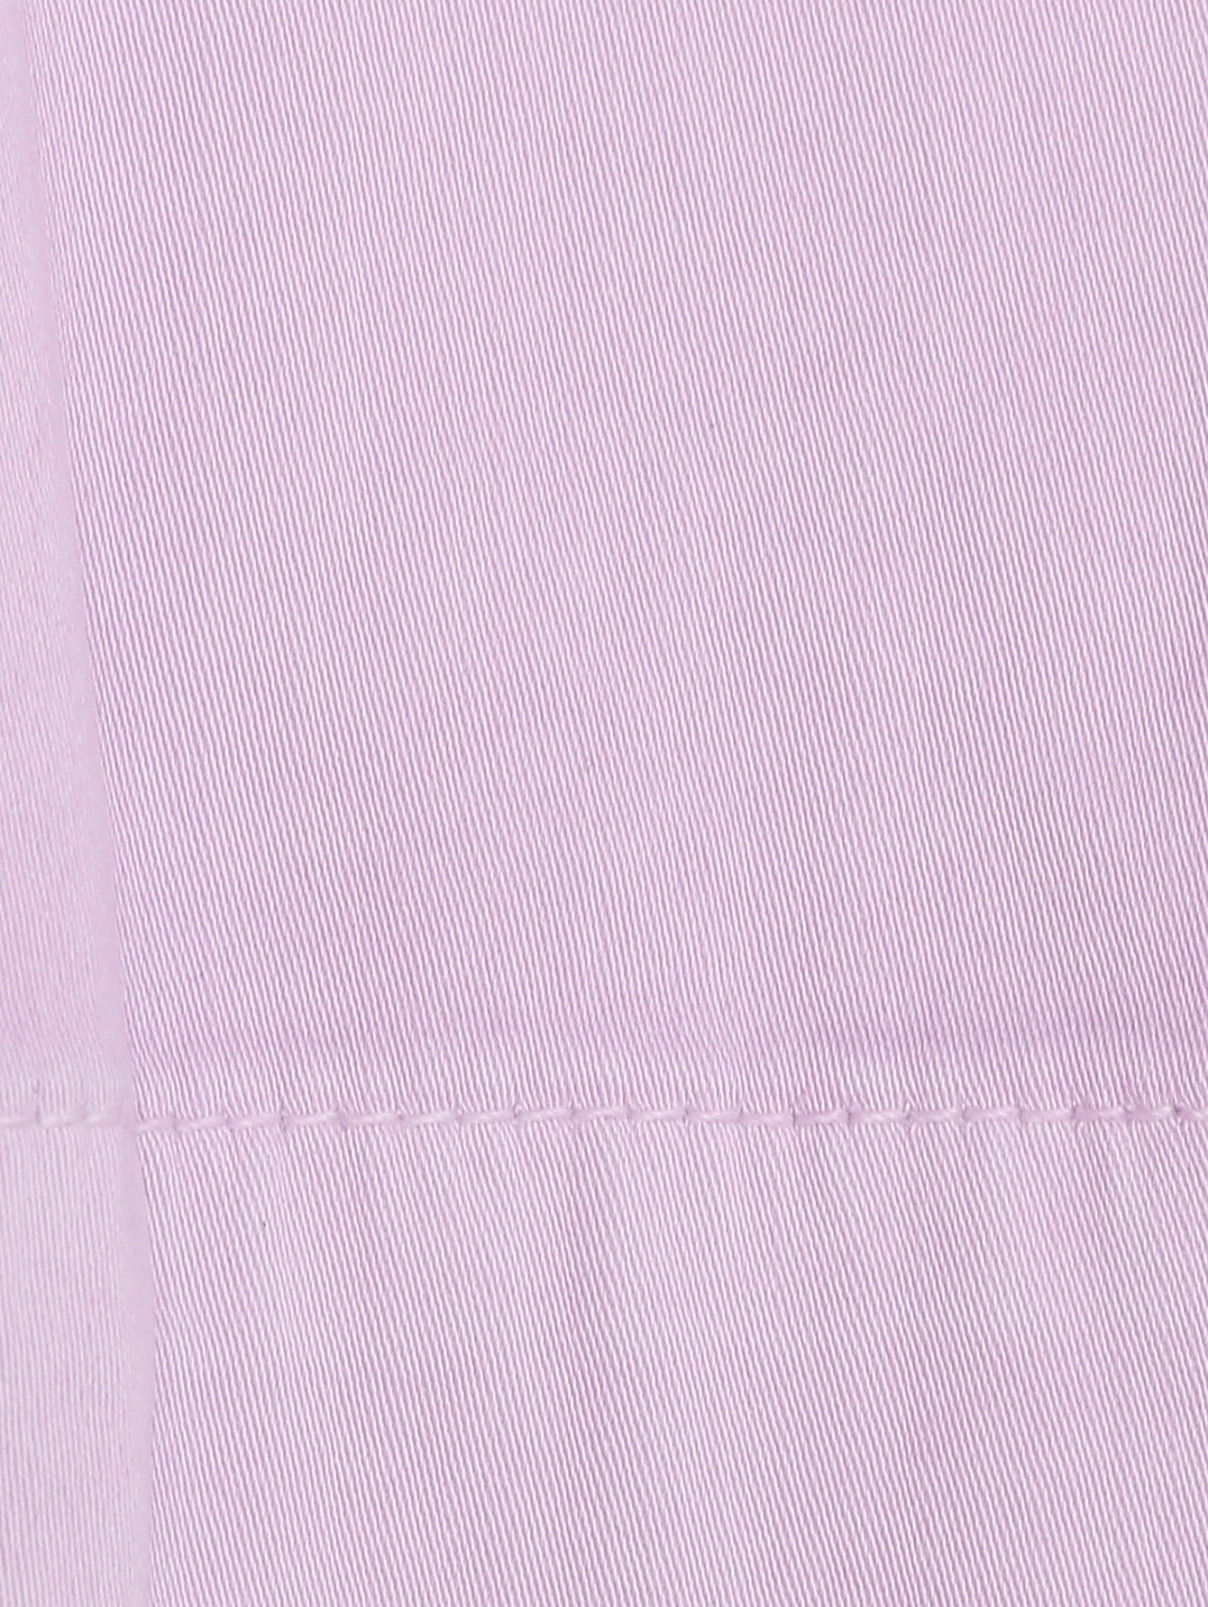 Брюки из хлопка и вискозы зауженные к низу Marina Rinaldi  –  Деталь1  – Цвет:  Фиолетовый